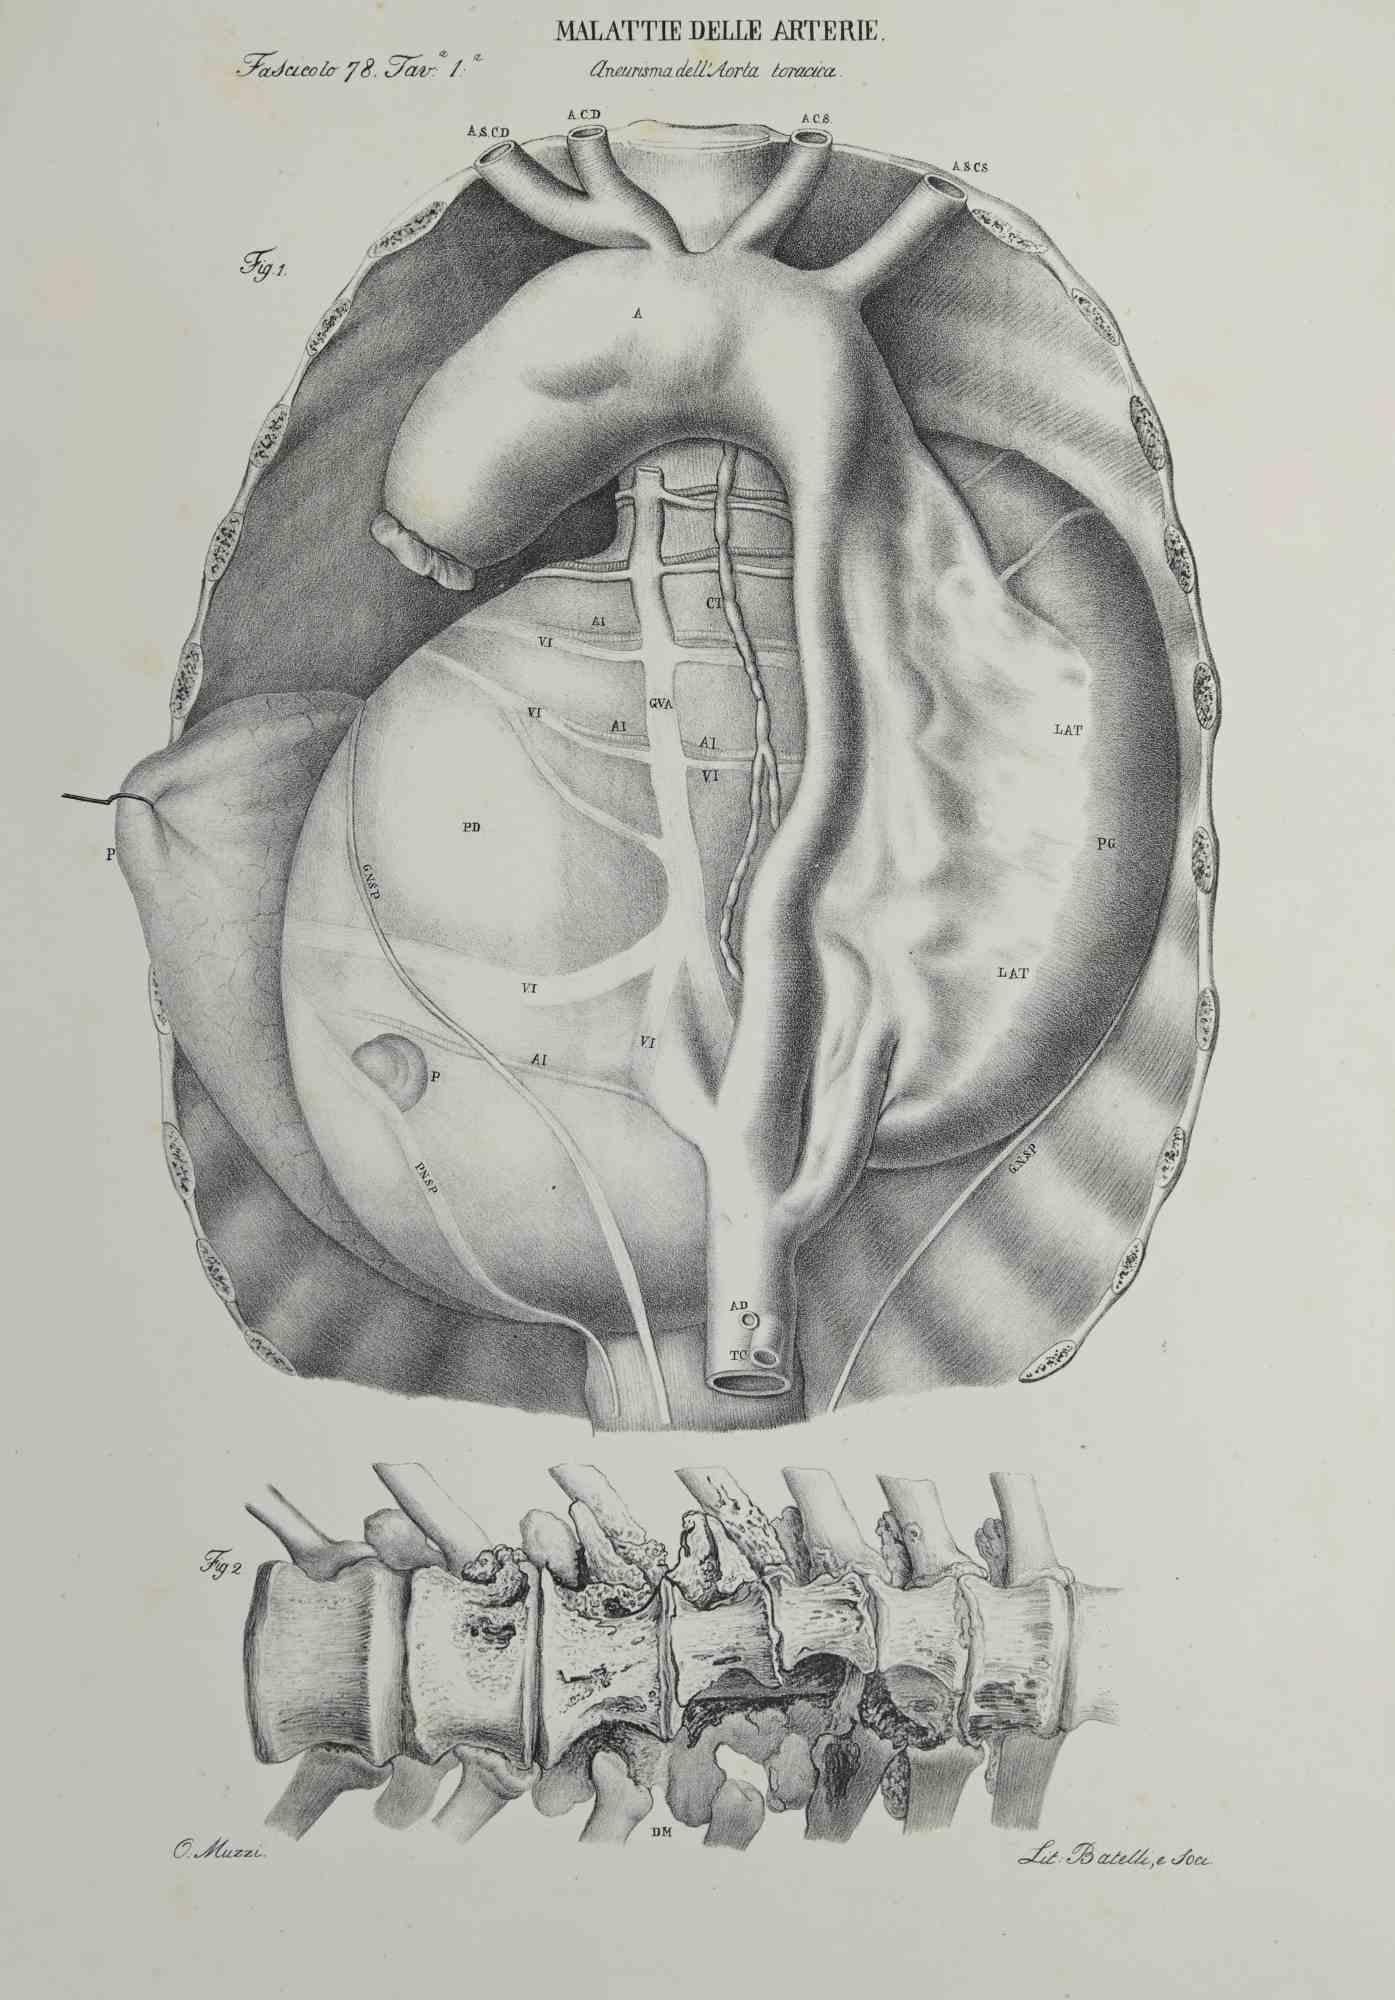 Maladie des artères est une lithographie réalisée par Ottavio Muzzi pour l'édition d'Antoine Chazal, Maladies humaines, Imprimeurs Batelli et Ridolfi, 1843.

L'ouvrage fait partie de l'Atlante generale della anatomia patologica del corpo umano de